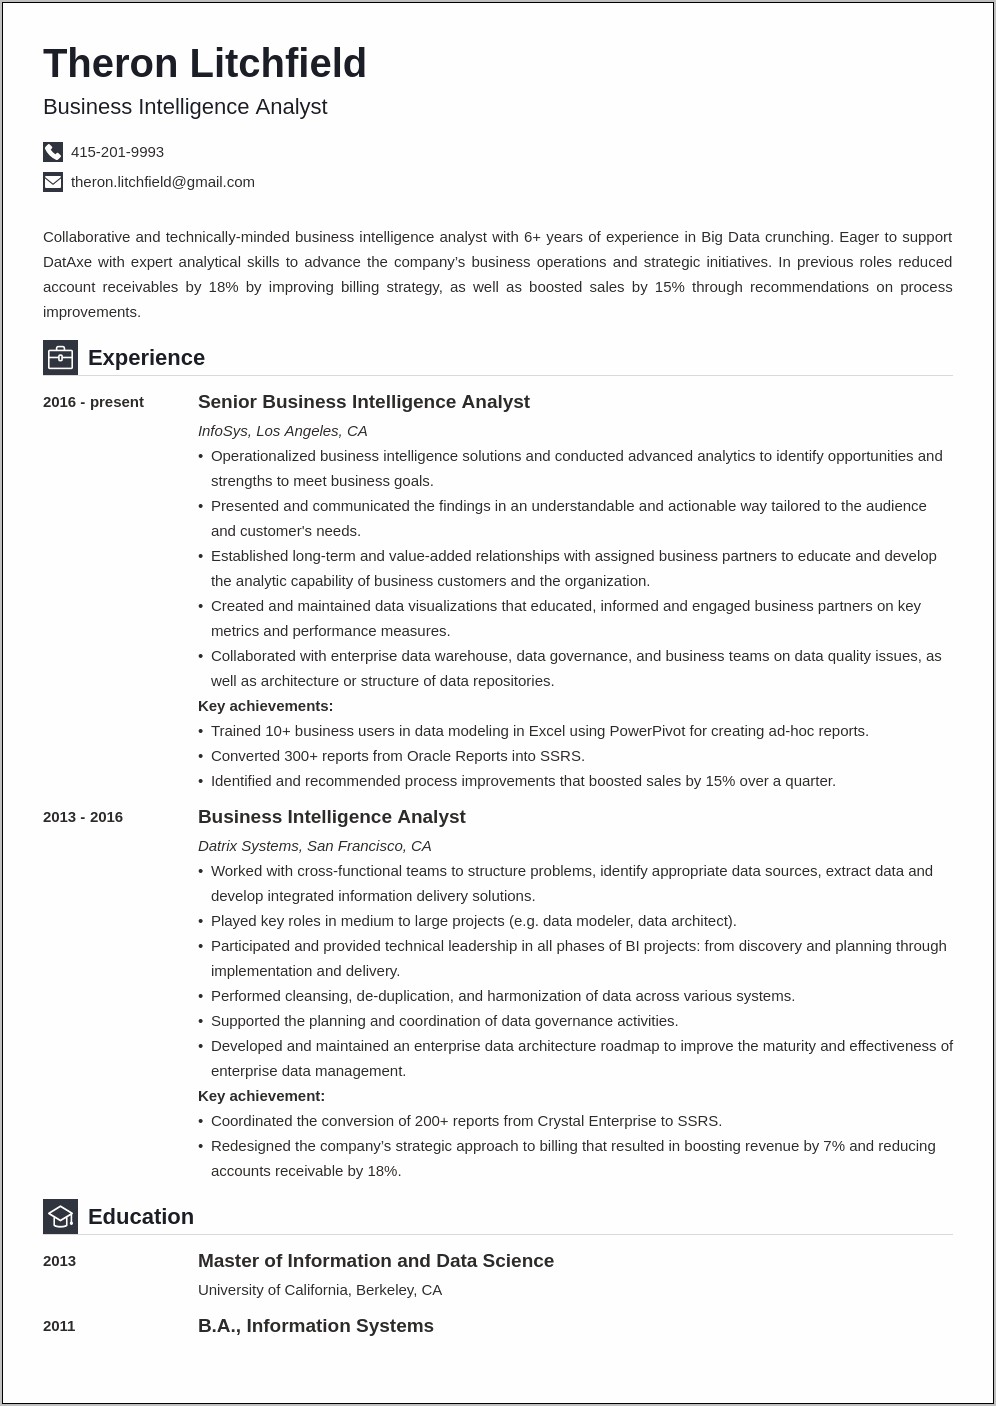 Sample Resume For Data Warehouse Analyst